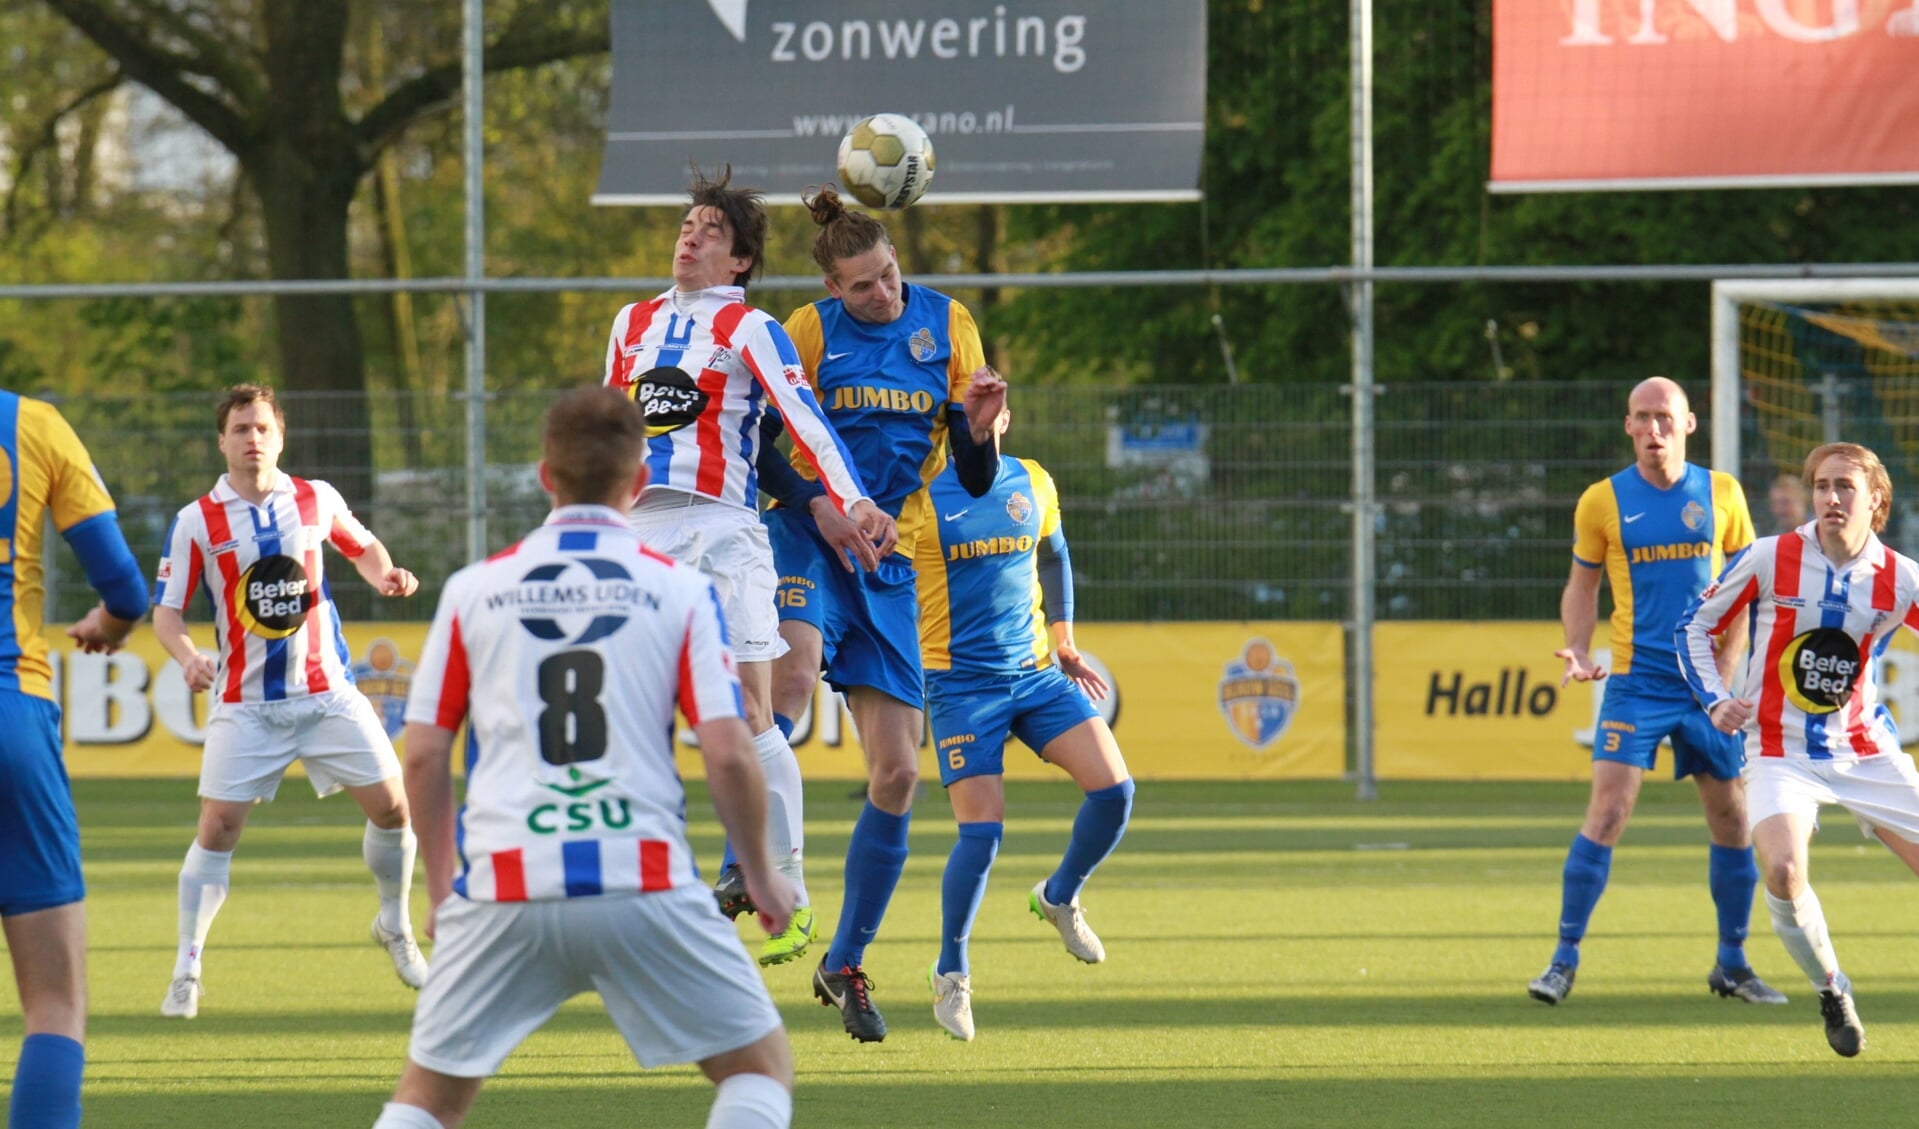 UDI'19 en Blauw Geel'38 speelden in 2016 voor het laatst tegen elkaar in competitieverband. Dit seizoen is het weer zover.